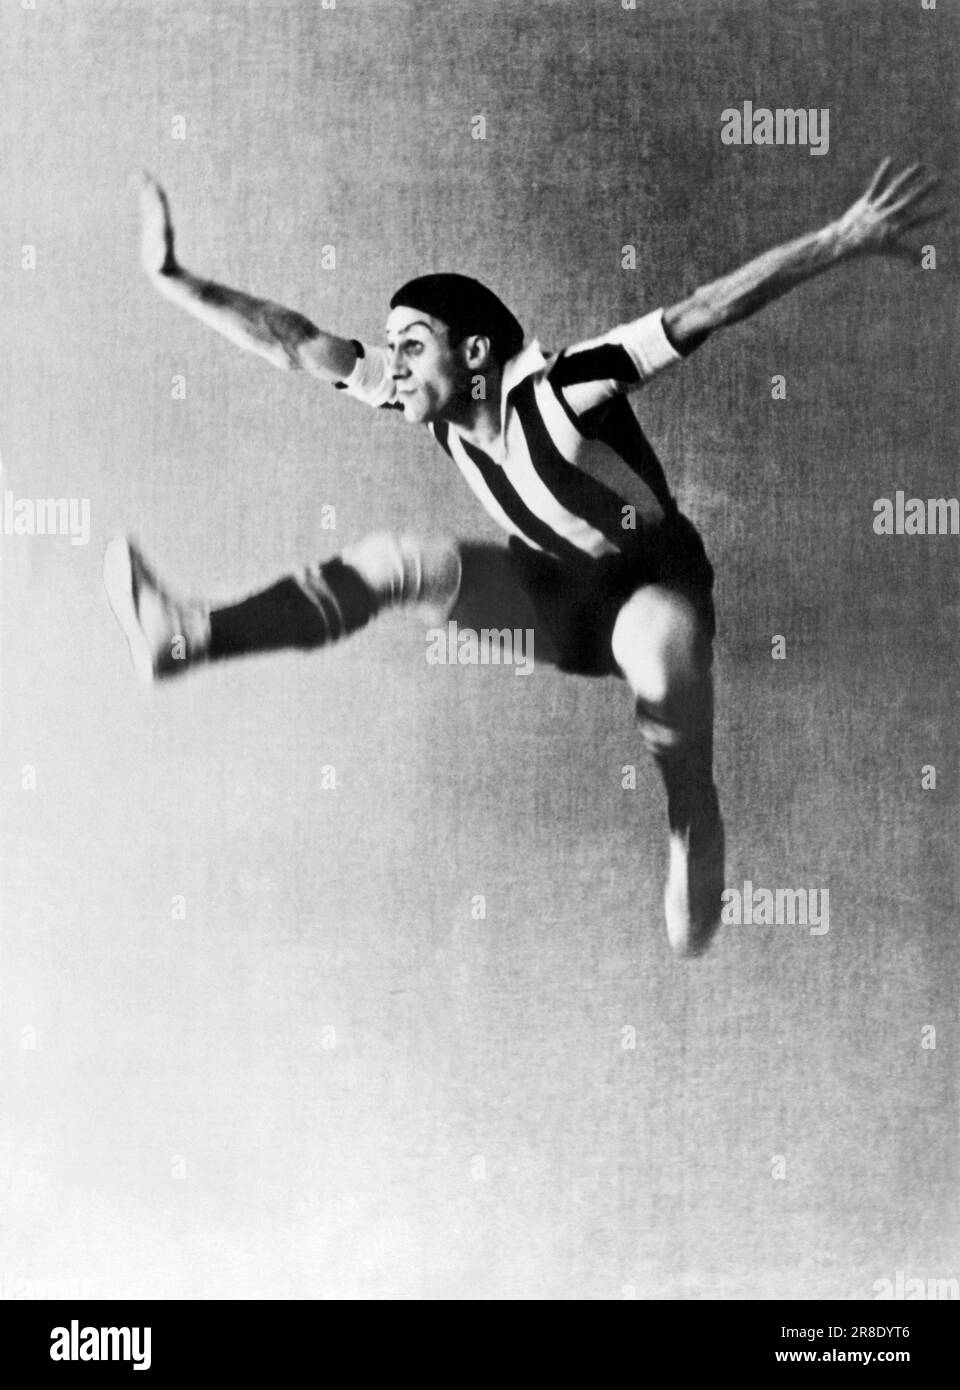 Moskau, Russland: 27. April 1936. ASAF Messerer, der wichtigste männliche Tänzer des Moskauer Opernballetts, wird im nächsten Winter in New York City sein amerikanisches Debüt mit Tänzen von „Salambo“, „The Red Poppy“, „Don Quijote“, „Flame of Paris“ und anderen neuen sowjetischen Balletten machen. Er wird von seiner Ballerina-Schwester Sulamith begleitet. Dieser Sprung stammt von seinem Tanz, dem der Footballisten. Stockfoto